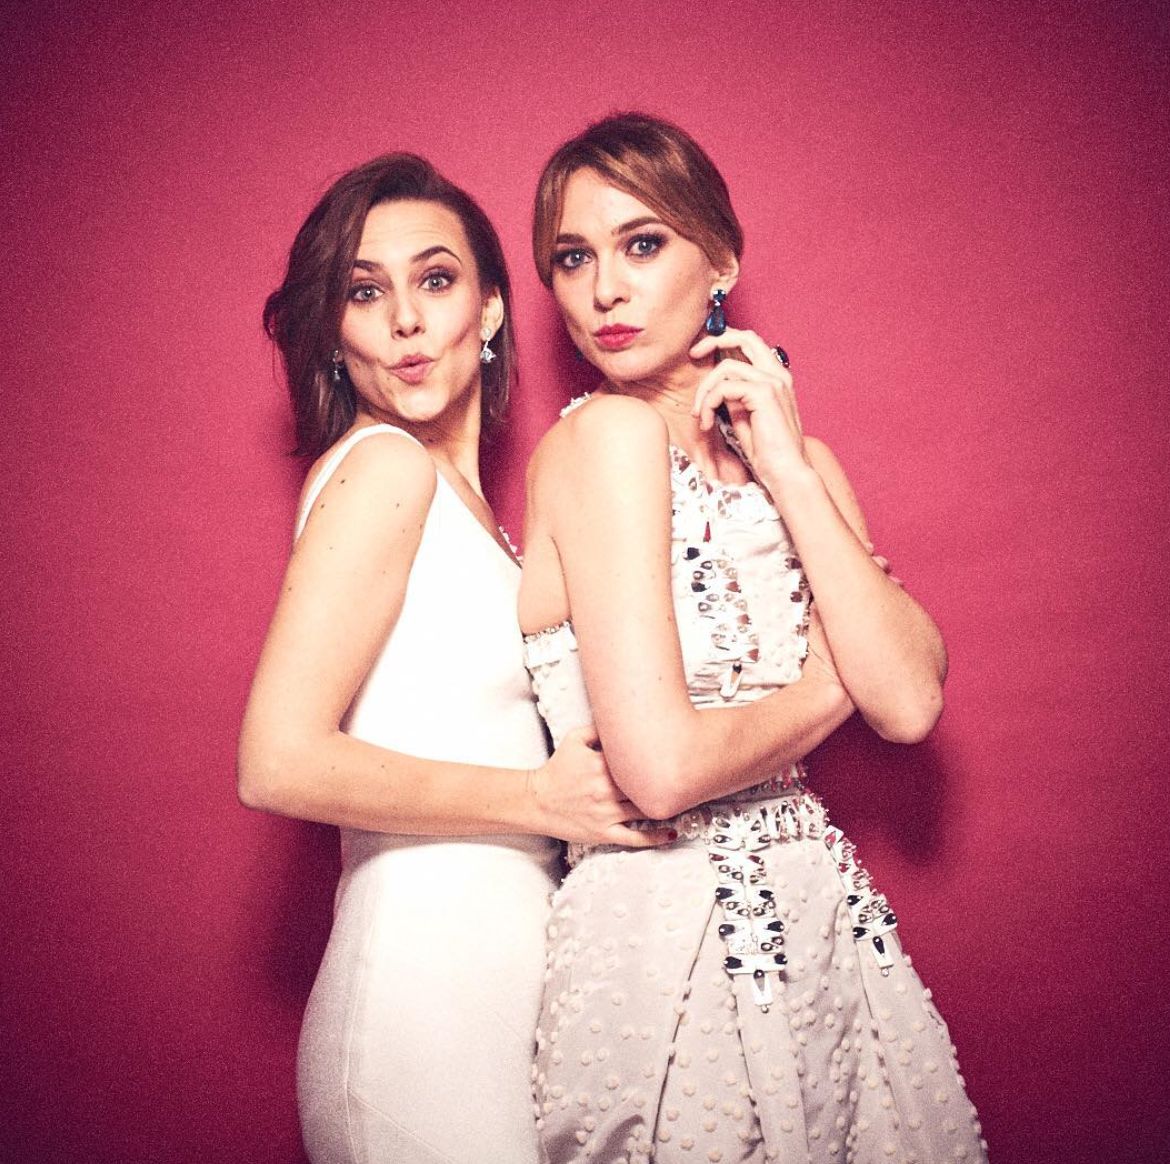 Aura Garrido y Marta hazas en el backstage de los Premios Goya 2016